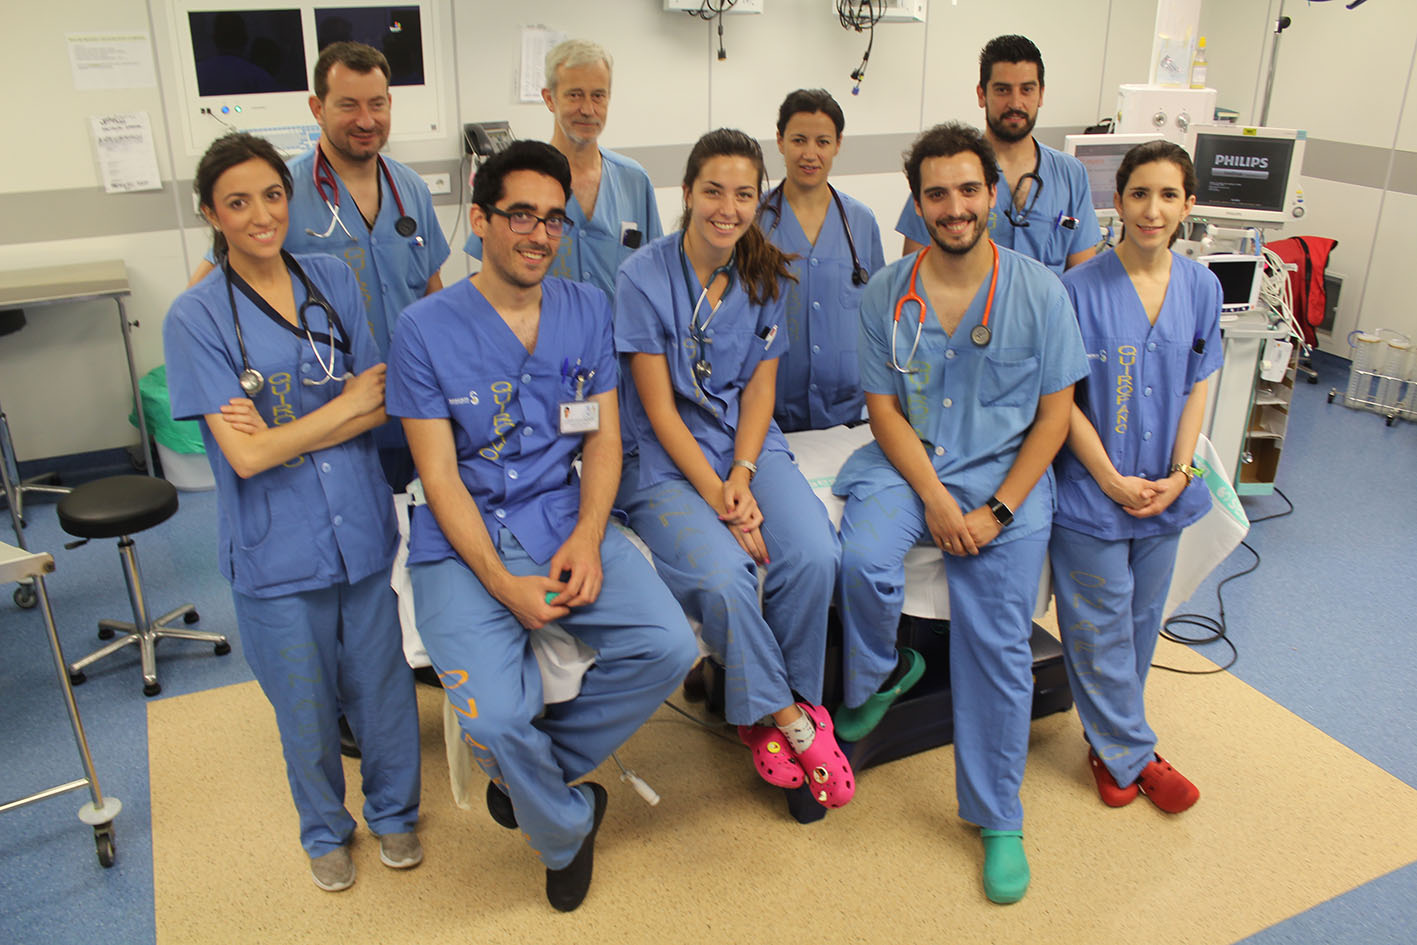 Los médicos premiados por el mejor caso clínico presentado en unas jornadas de la Sociedad de Anestesia de CLM.